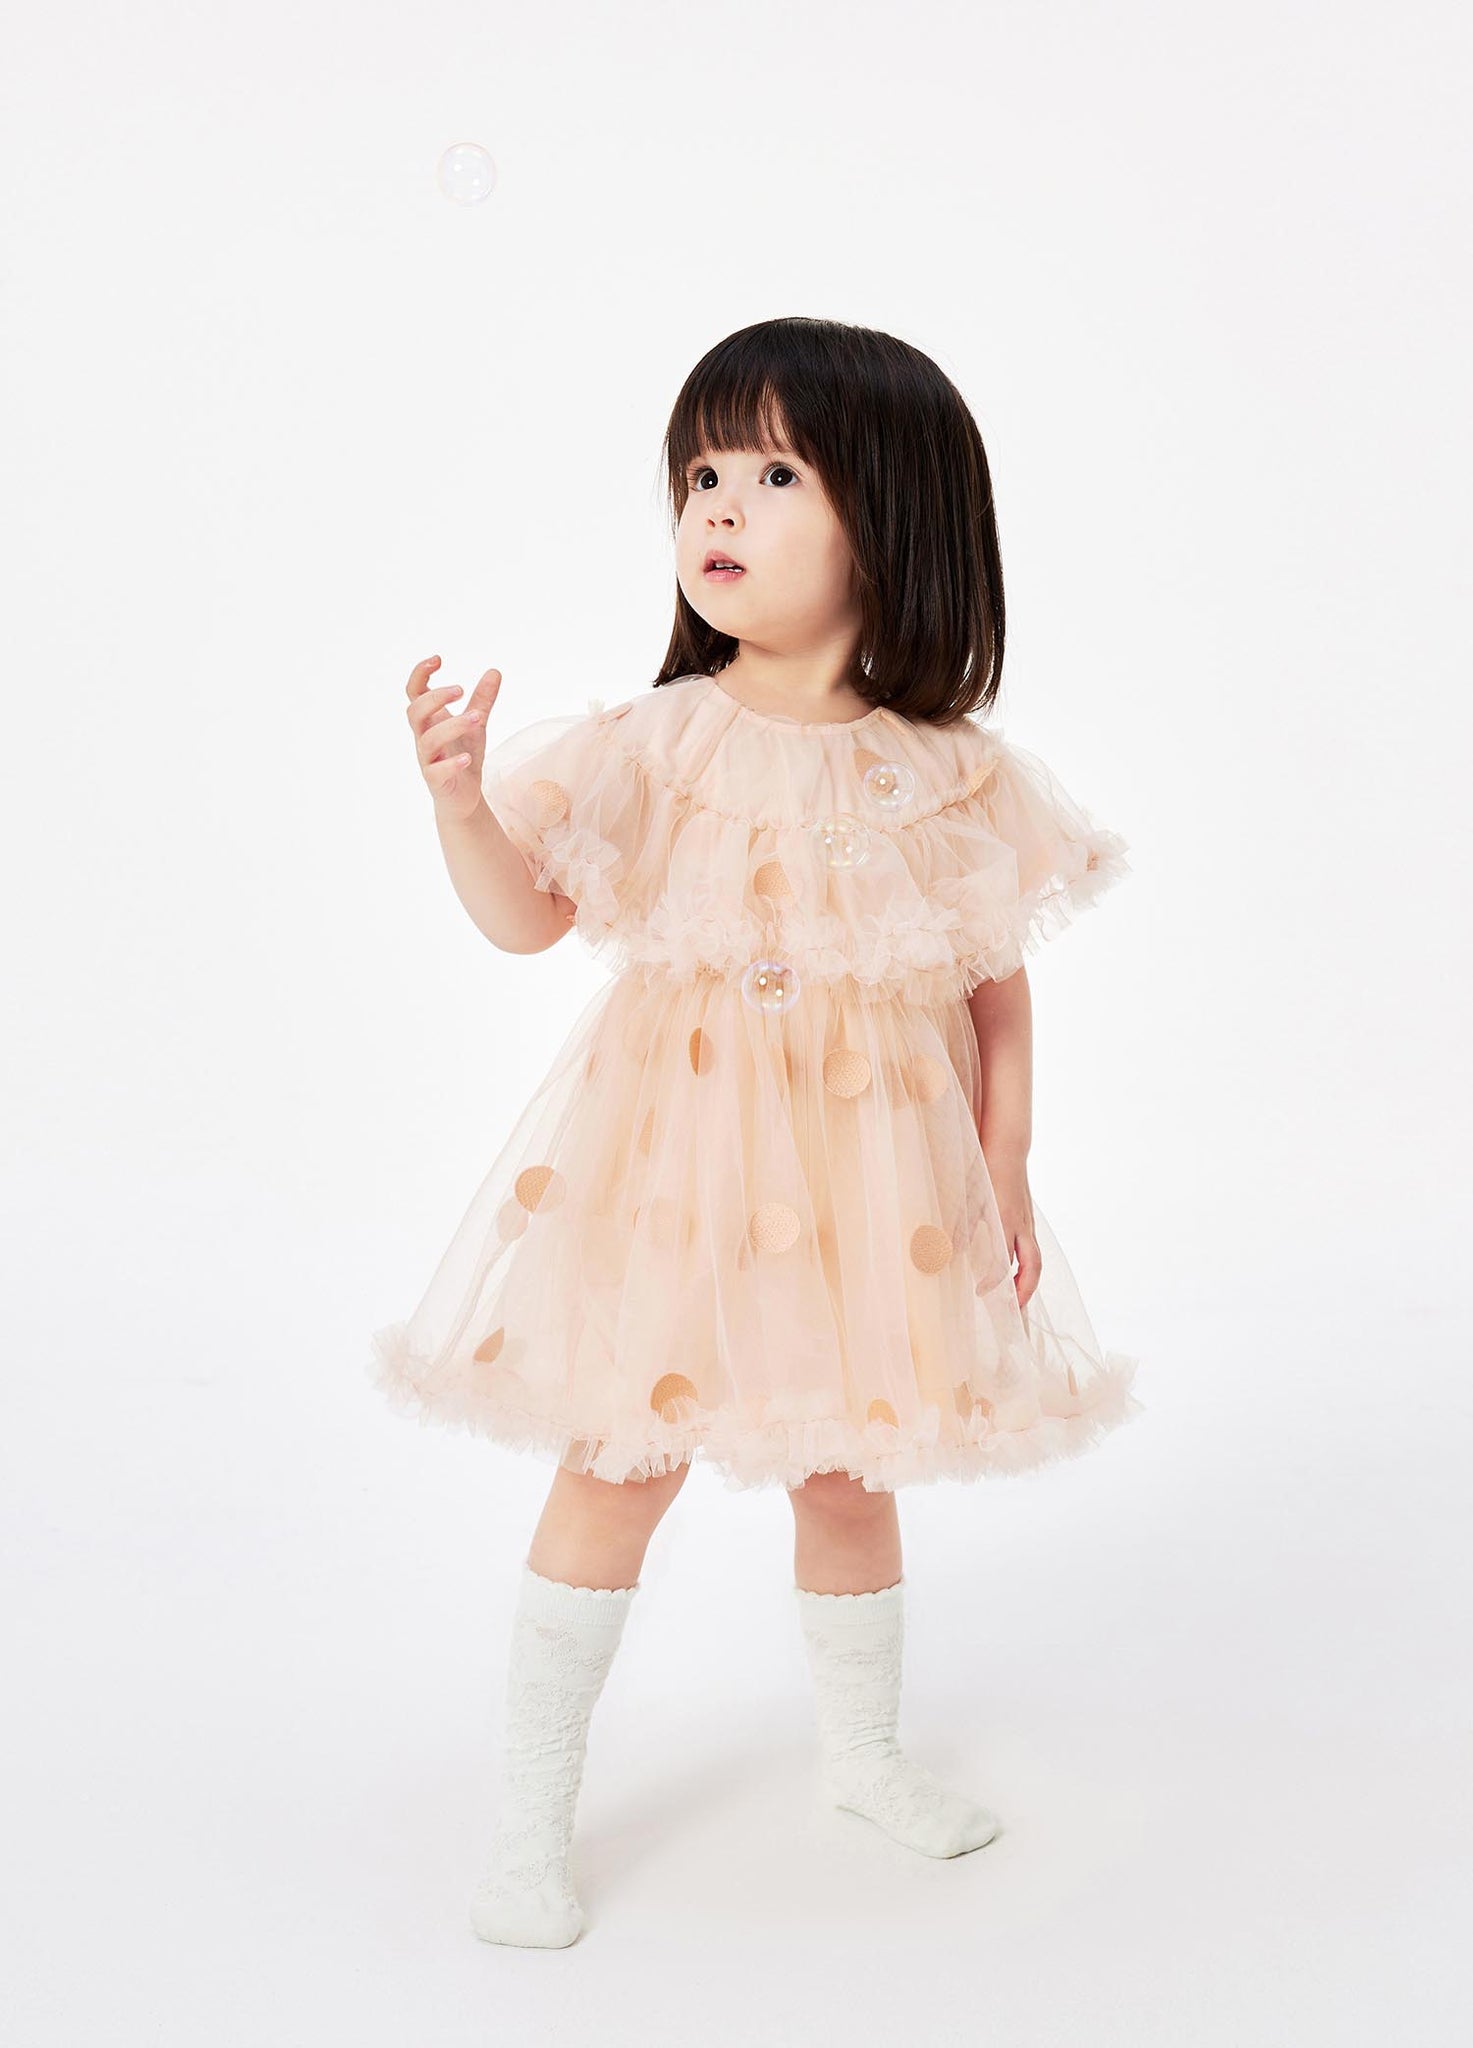 Dresses / jnby for mini Short Sleeve Dress